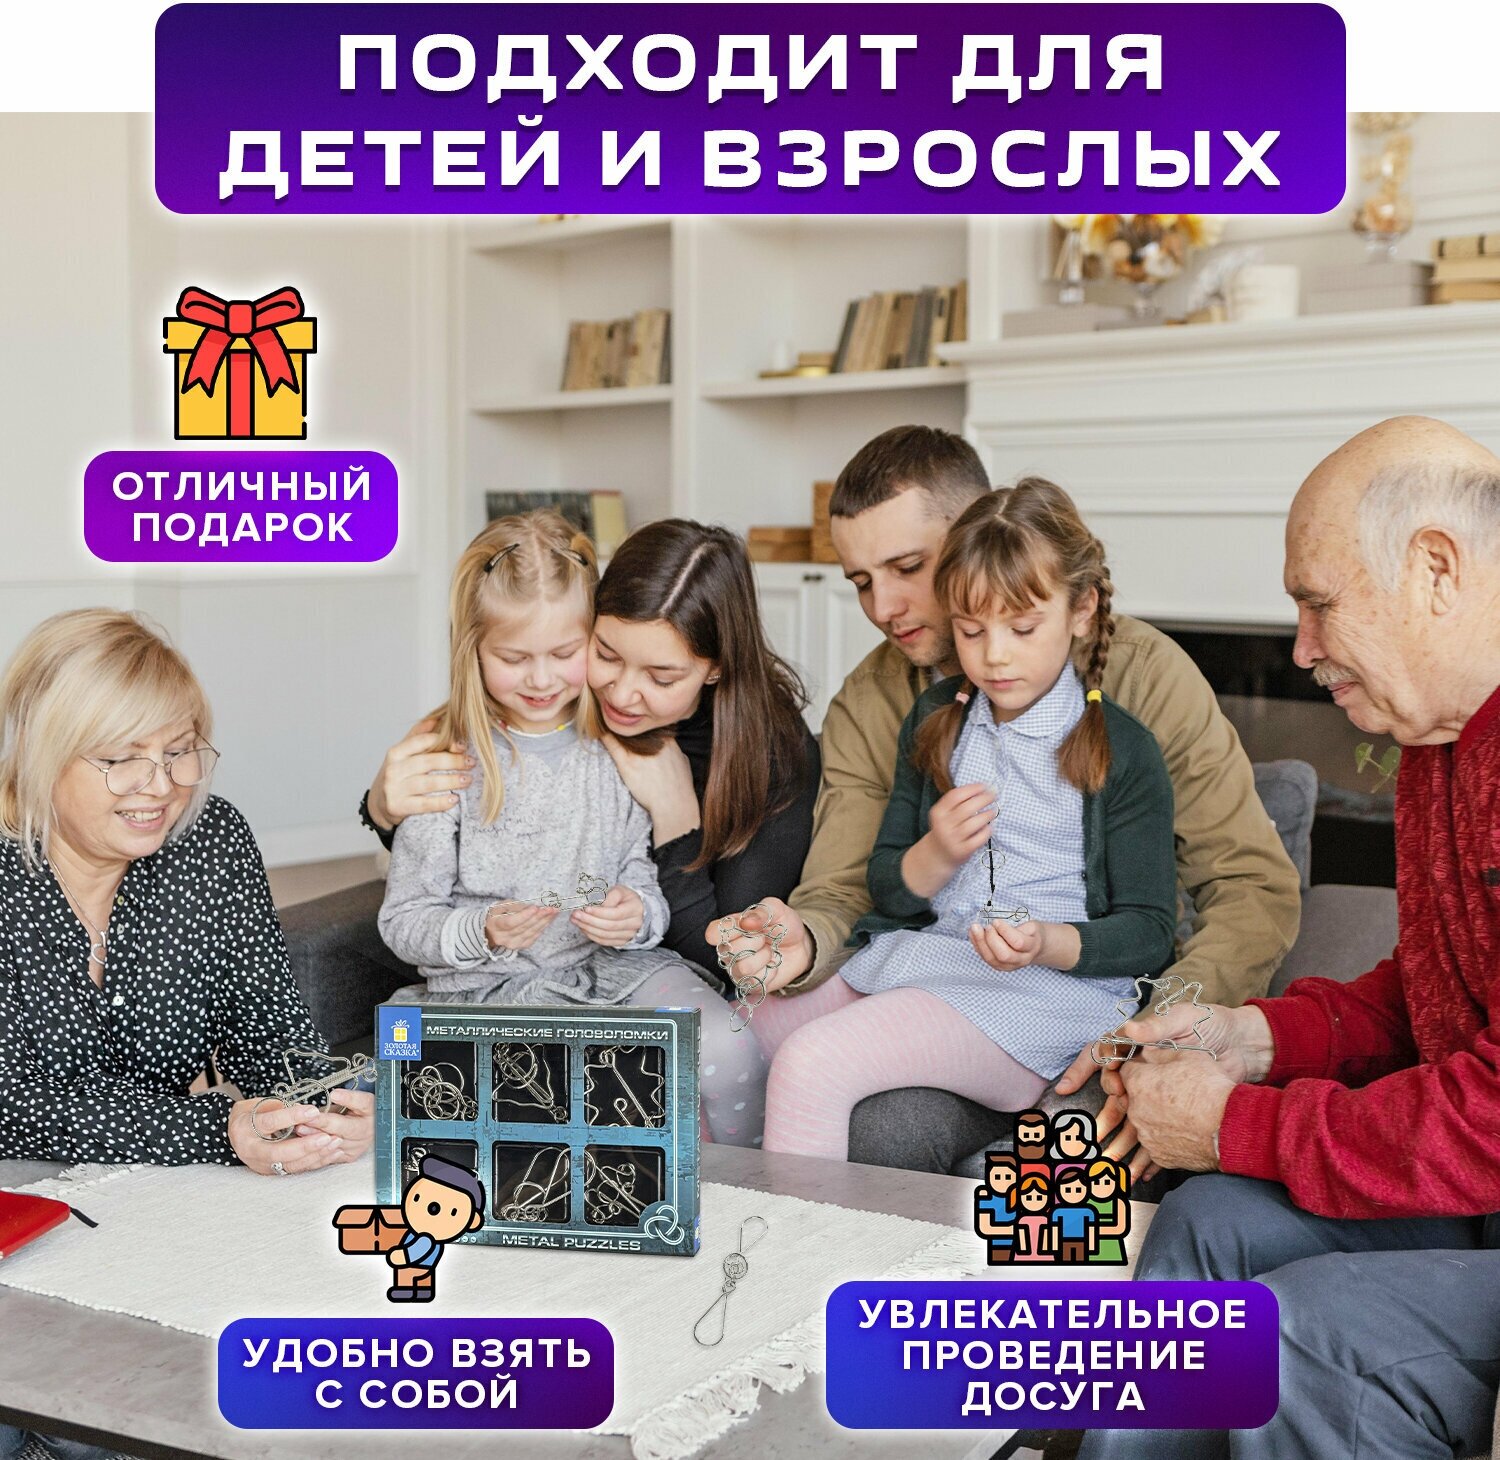 Головоломки металлические для взрослых и детей / развивающие игрушки большие Золотая Сказка, набор 6 штук, High level, 664927